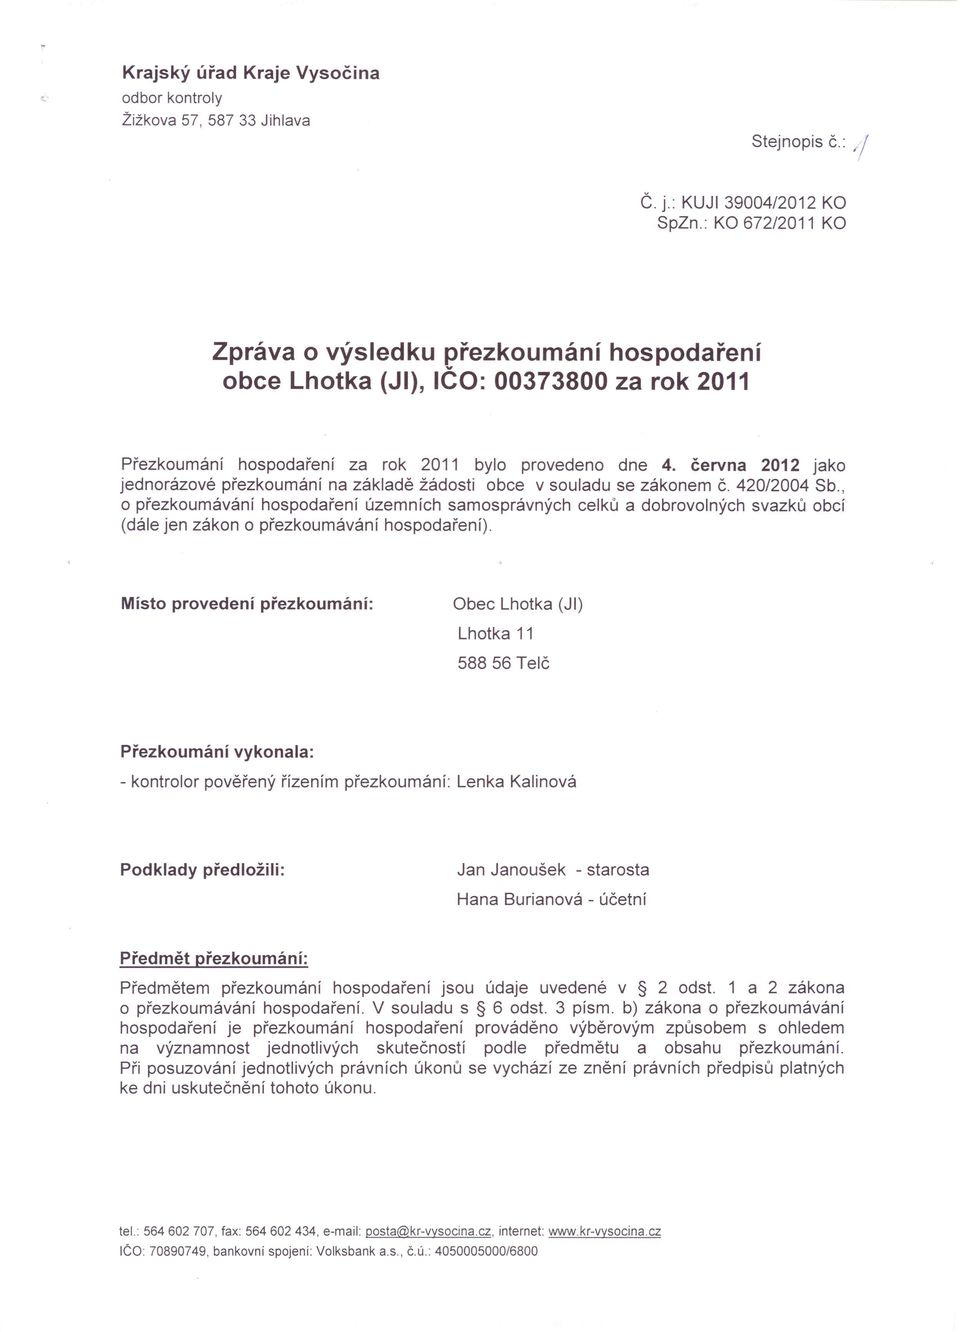 června 2012 jako jednorázové přezkoumání na základě žádosti obce v souladu se zákonem Č. 420/2004 Sb.